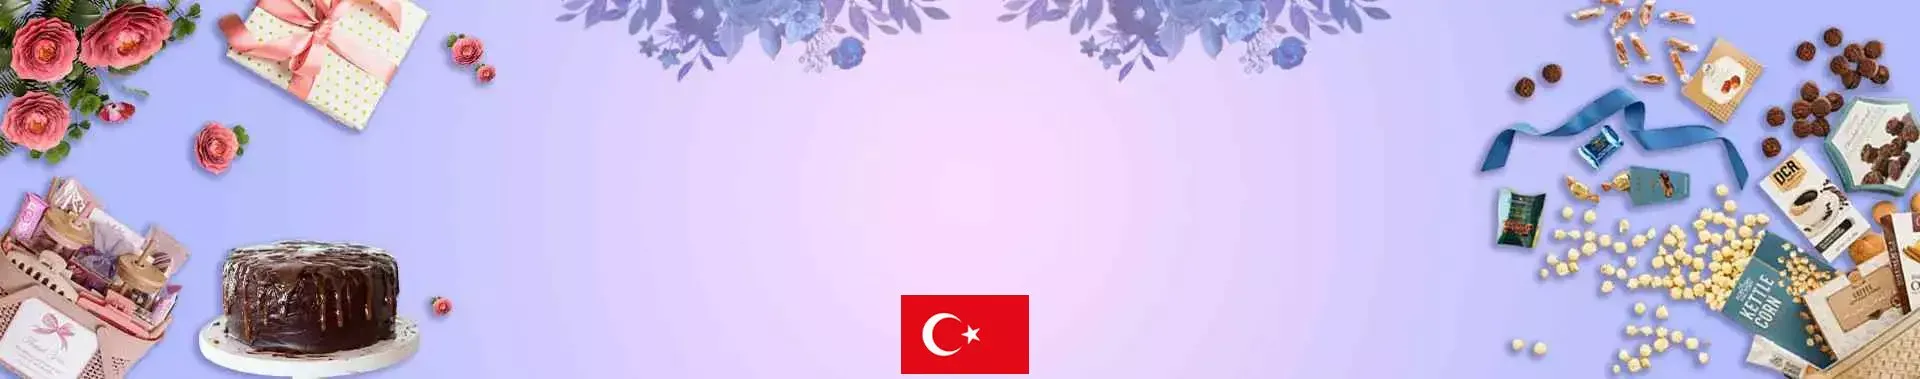 Send Gifts to Turkey, Gift Baskets to Turkey, Hampers to Turkey, Hampers & Gifts delivery in Turkey Online